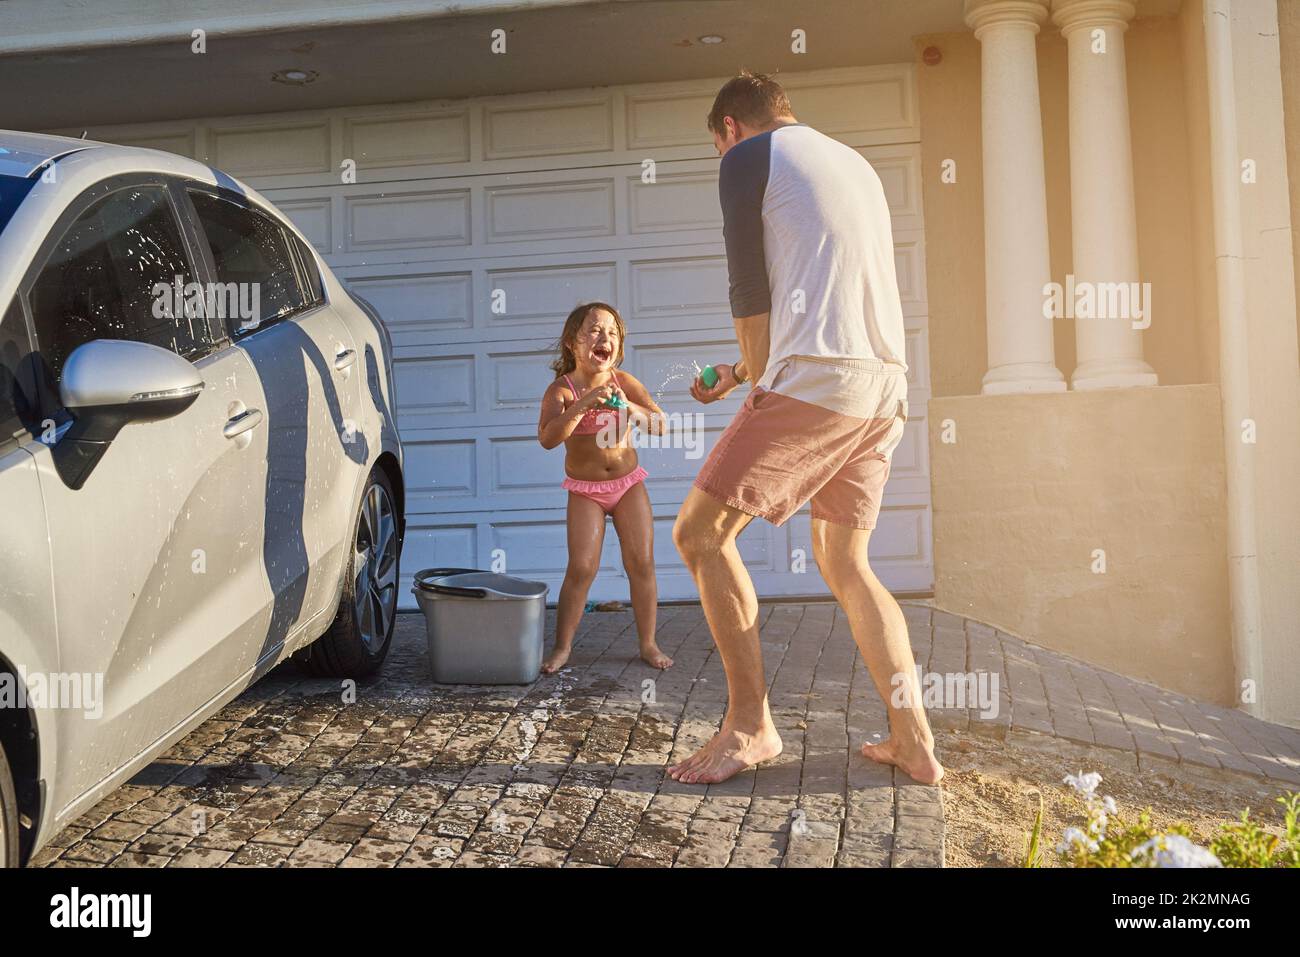 Foto zum Thema Ein kleines Mädchen, das ein Auto mit einem Schlauch wäscht  – Bild zu Hochdruckreinigung auf Unsplash